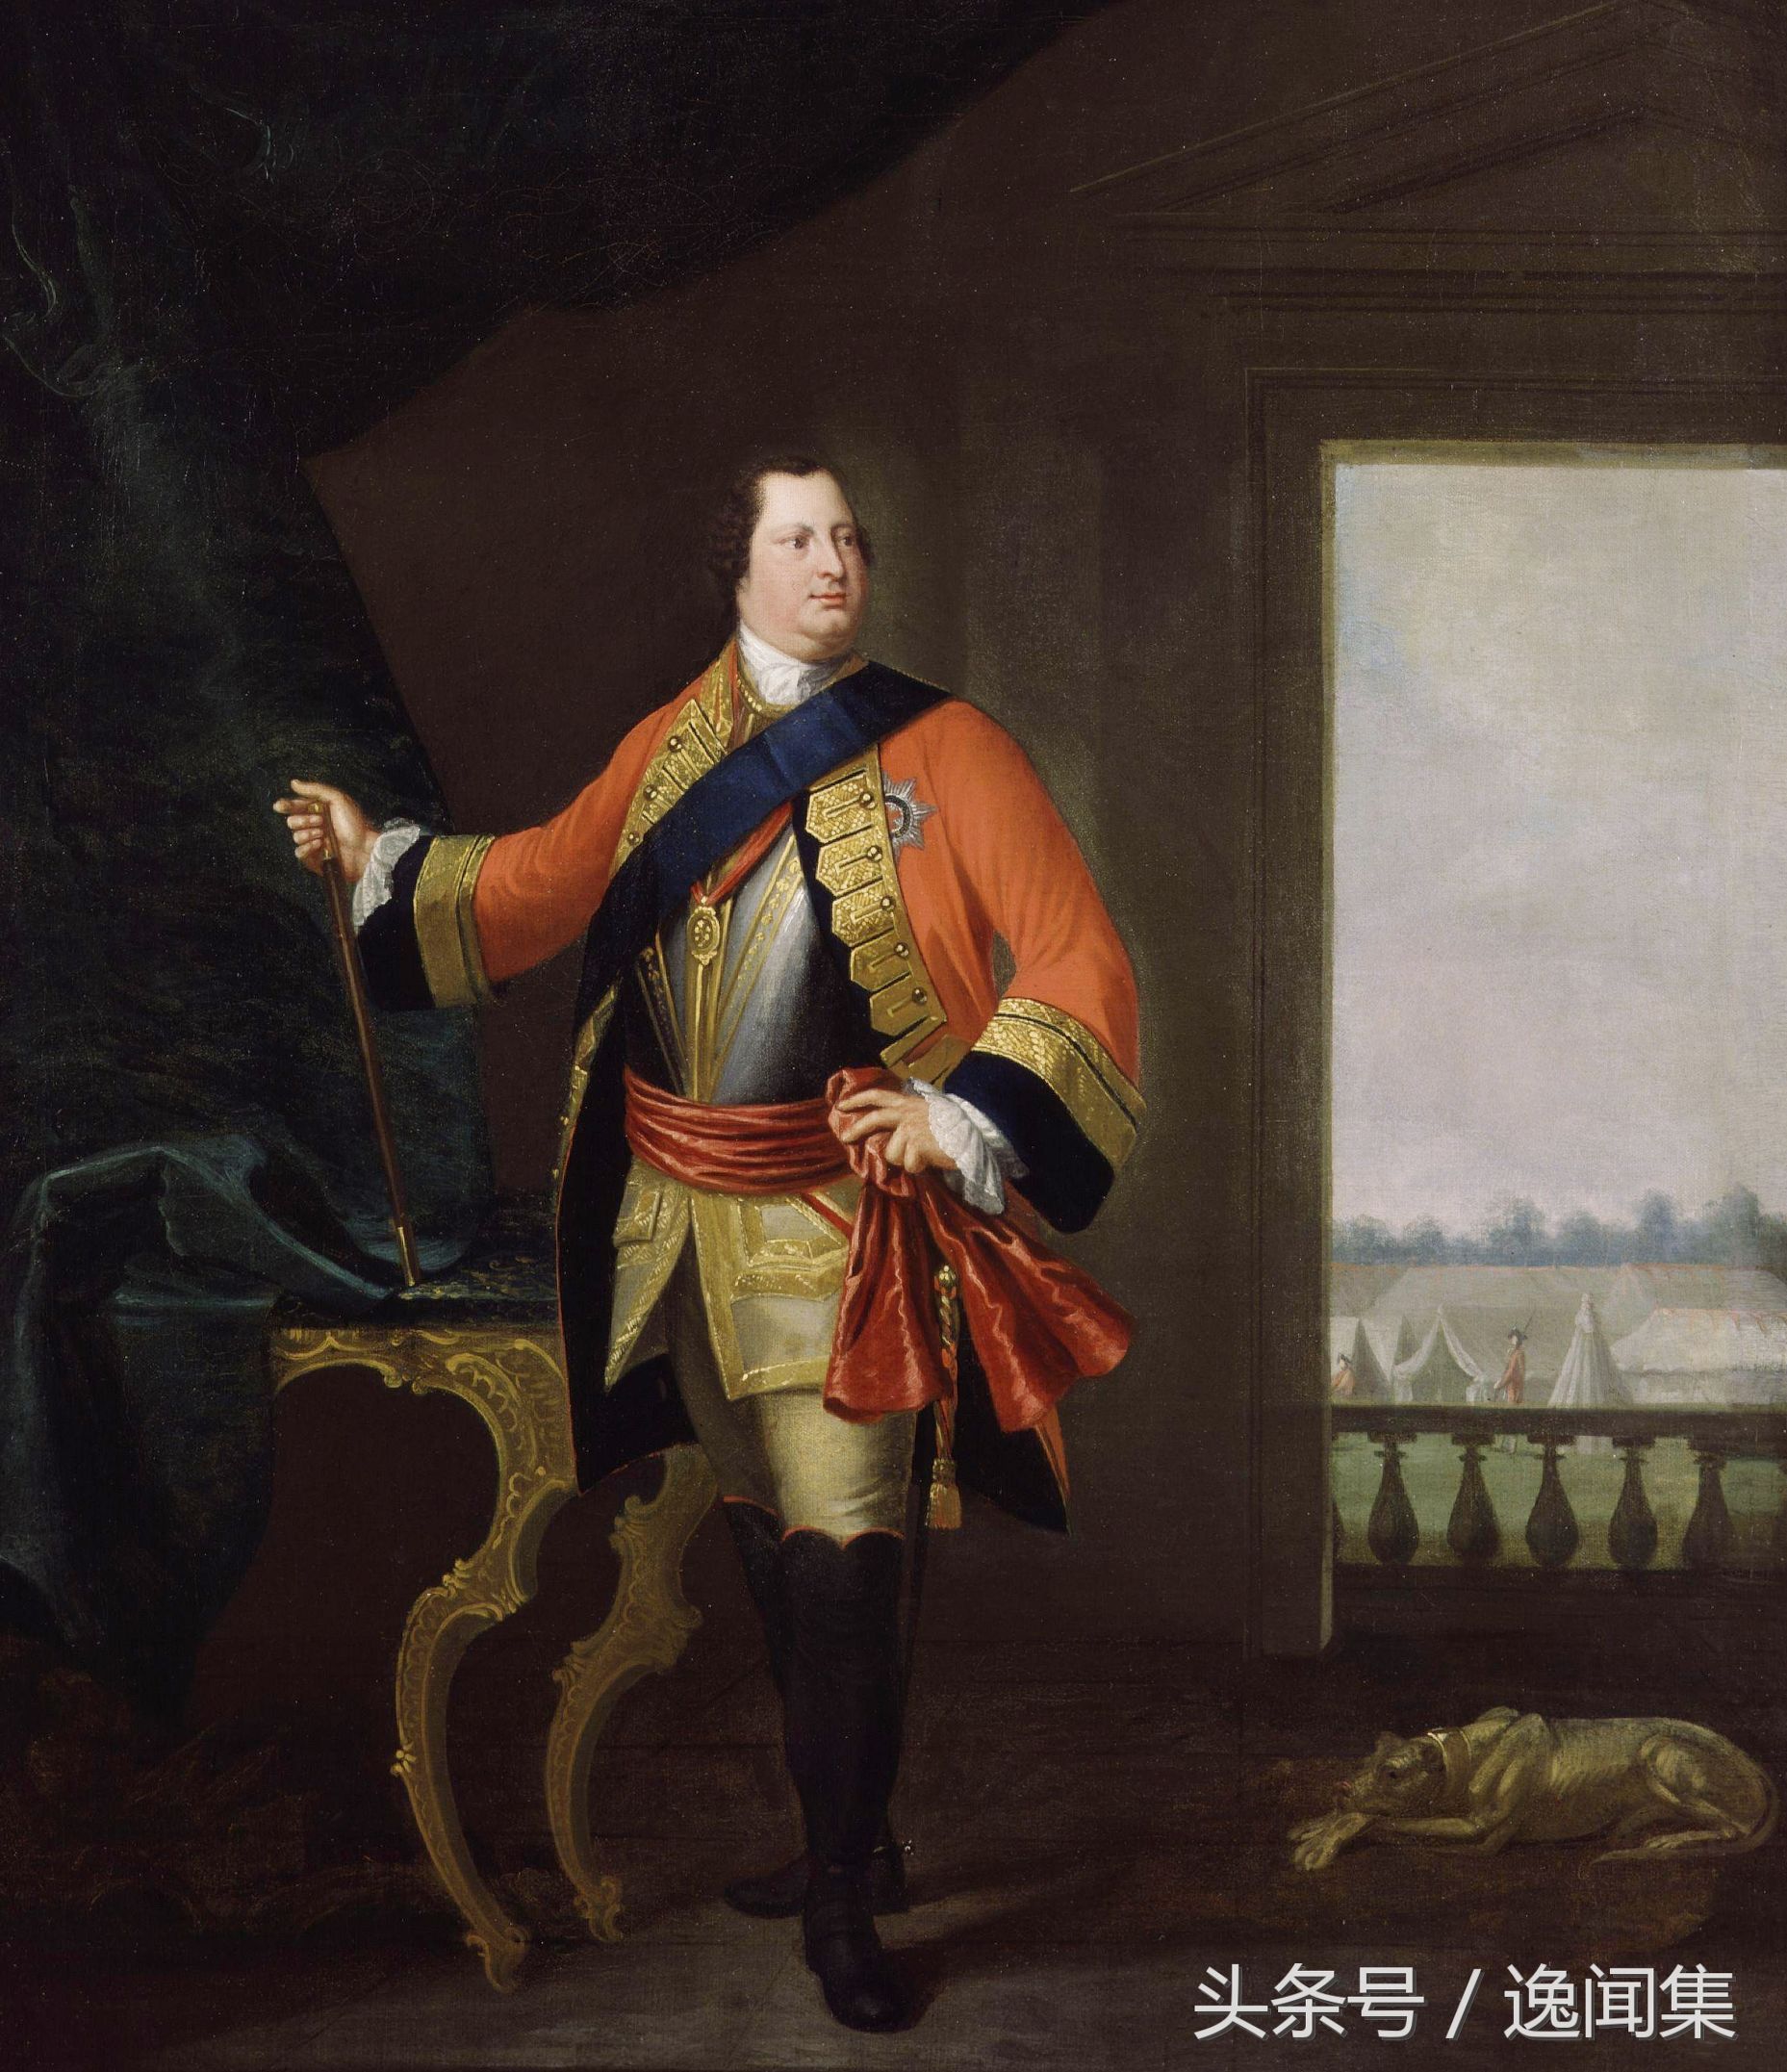 坎伯兰公爵,是个胖子坎伯兰公爵生于1721年,从小被当作军事人才培养